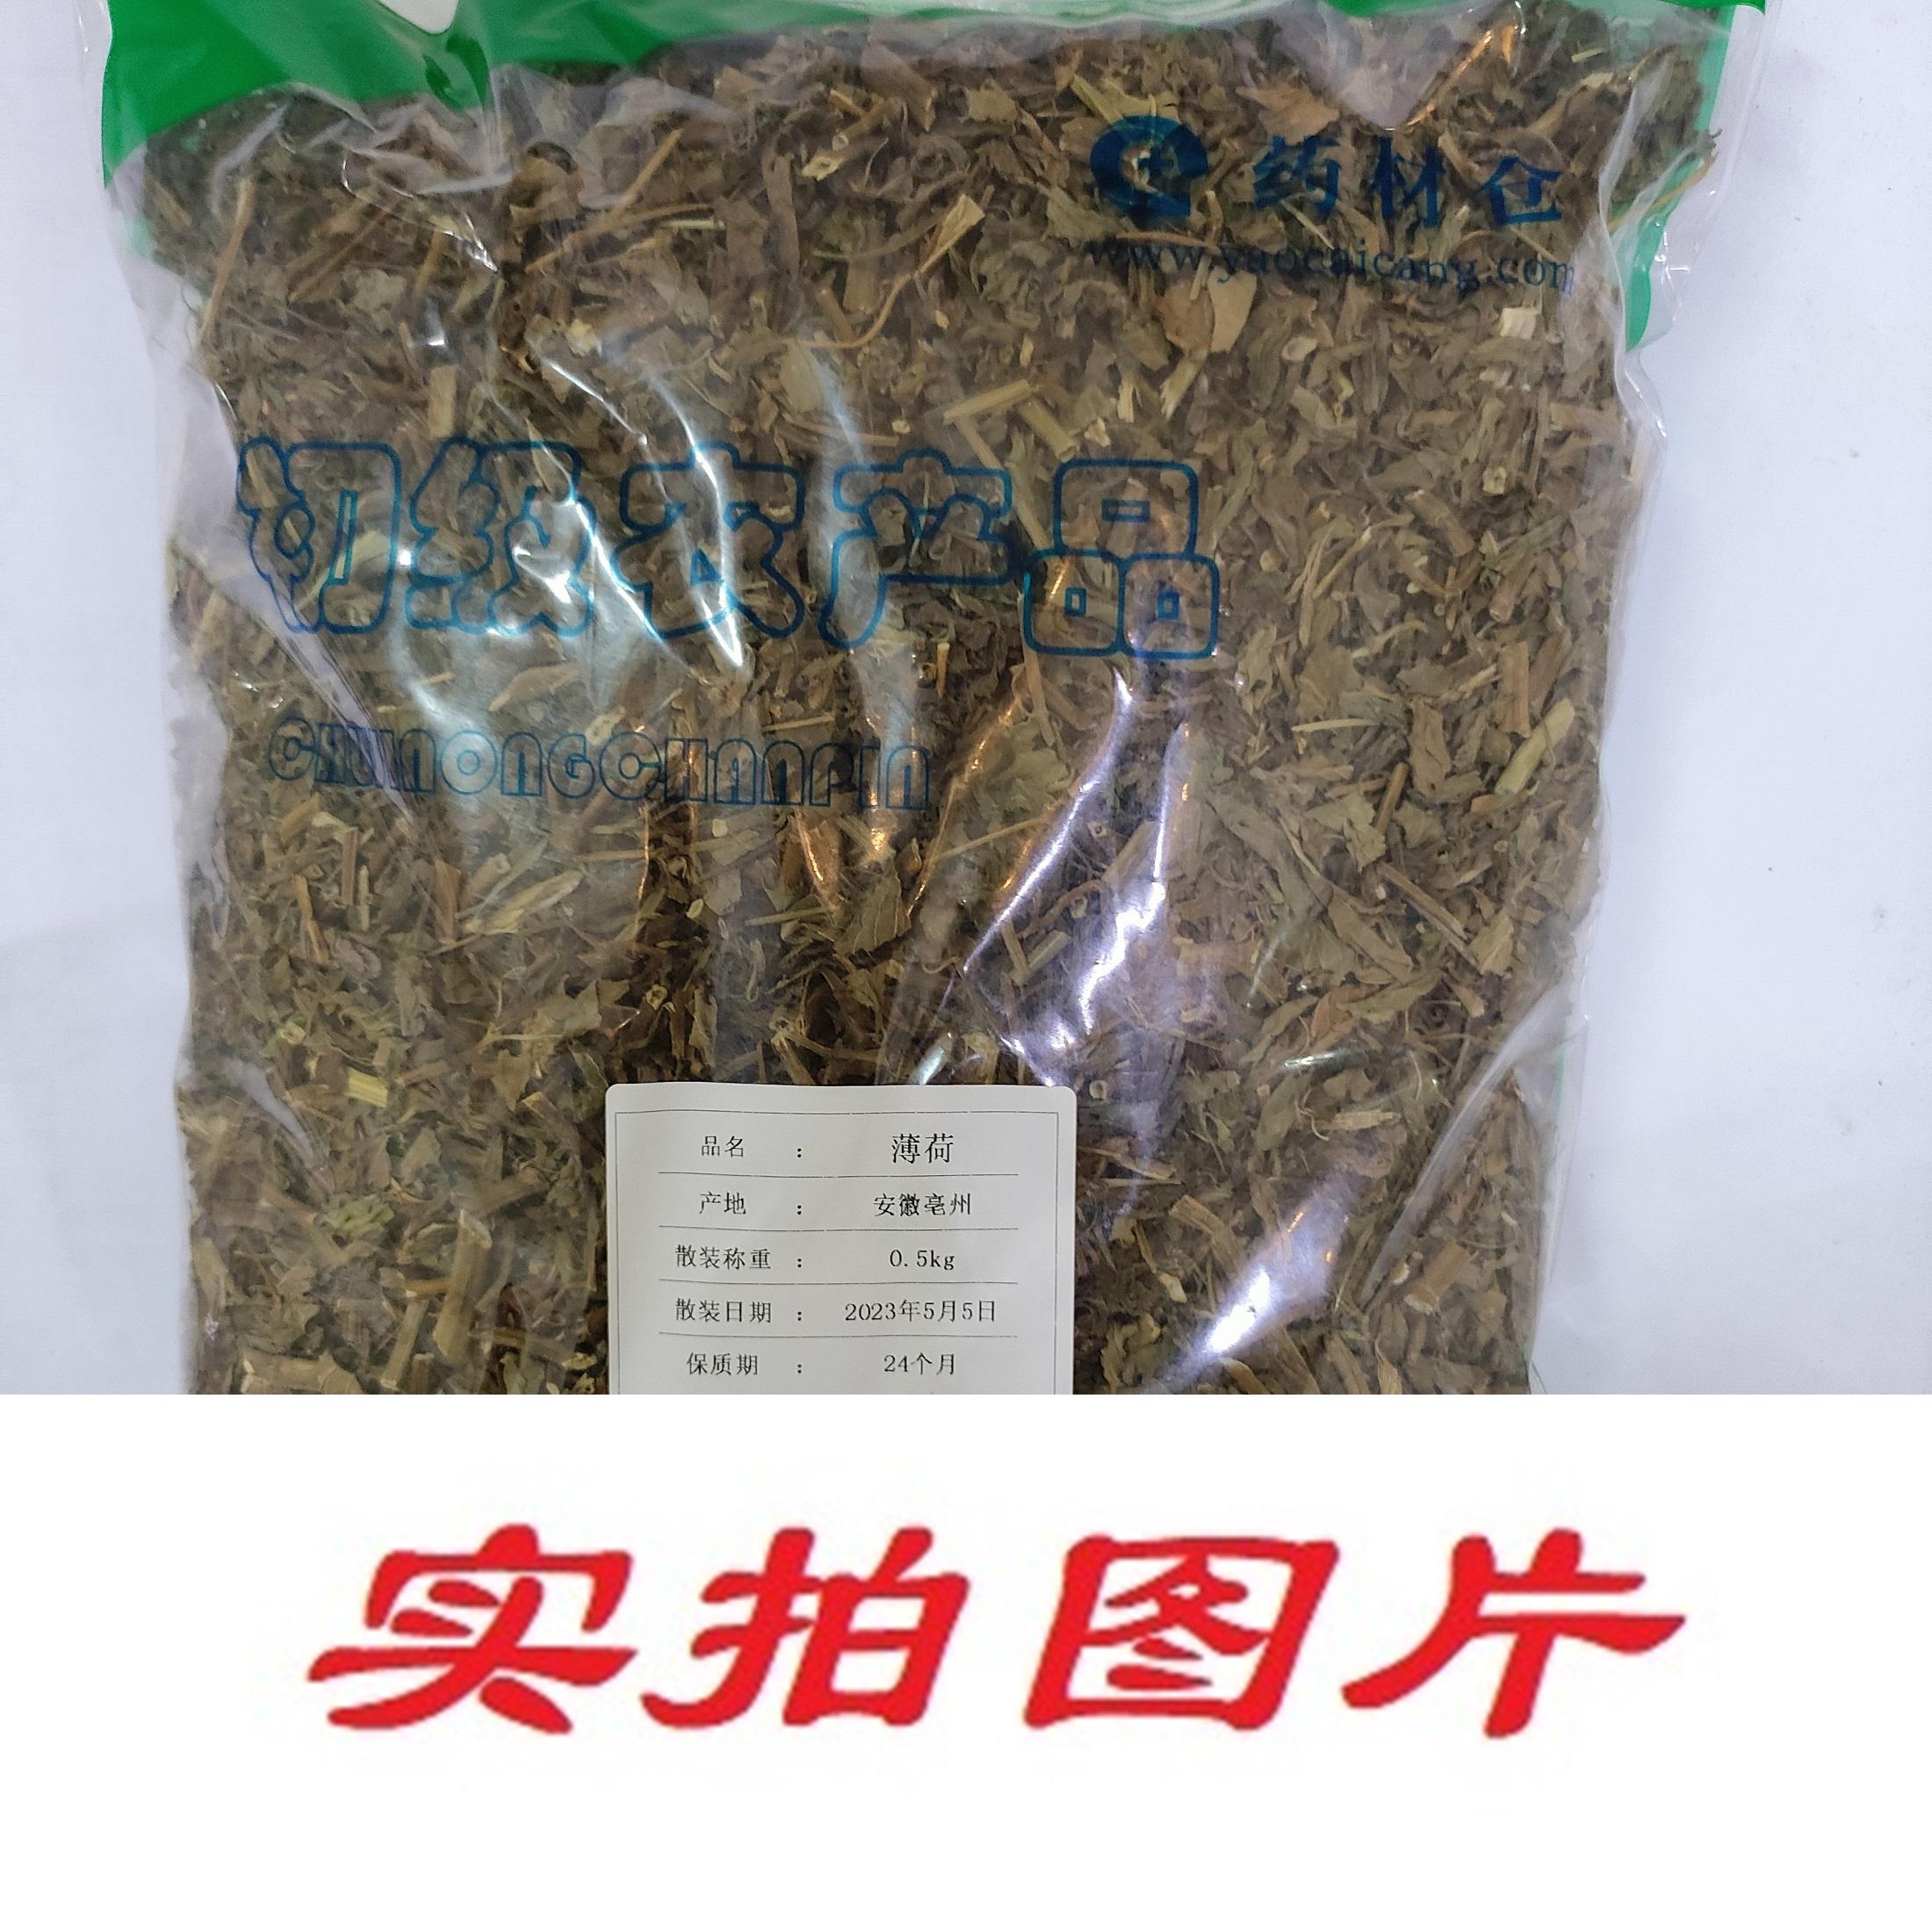 【】薄荷0.5kg-农副产品